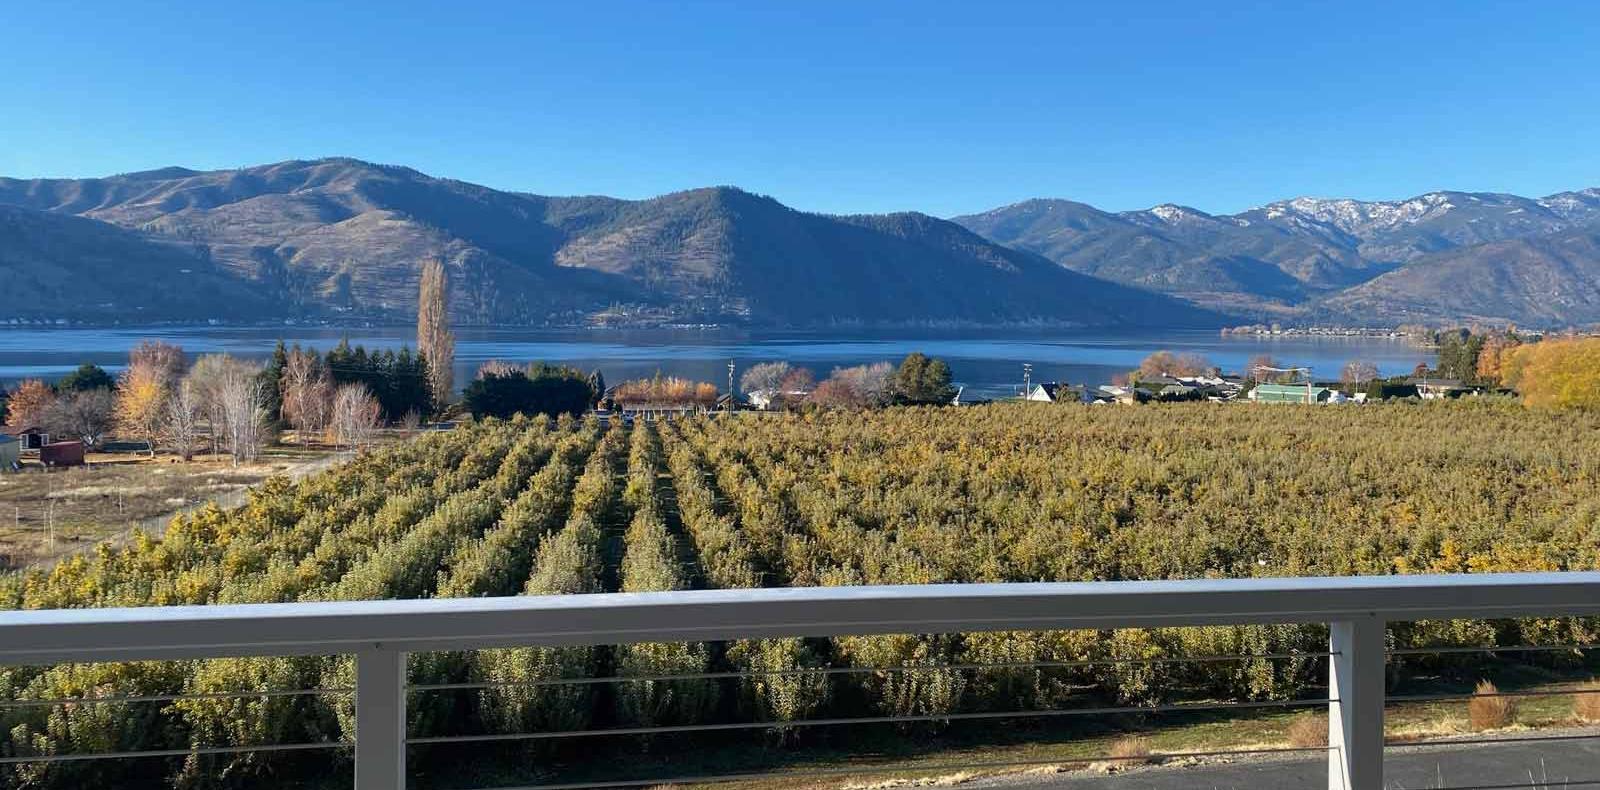 Vineyards near Lake Chelan